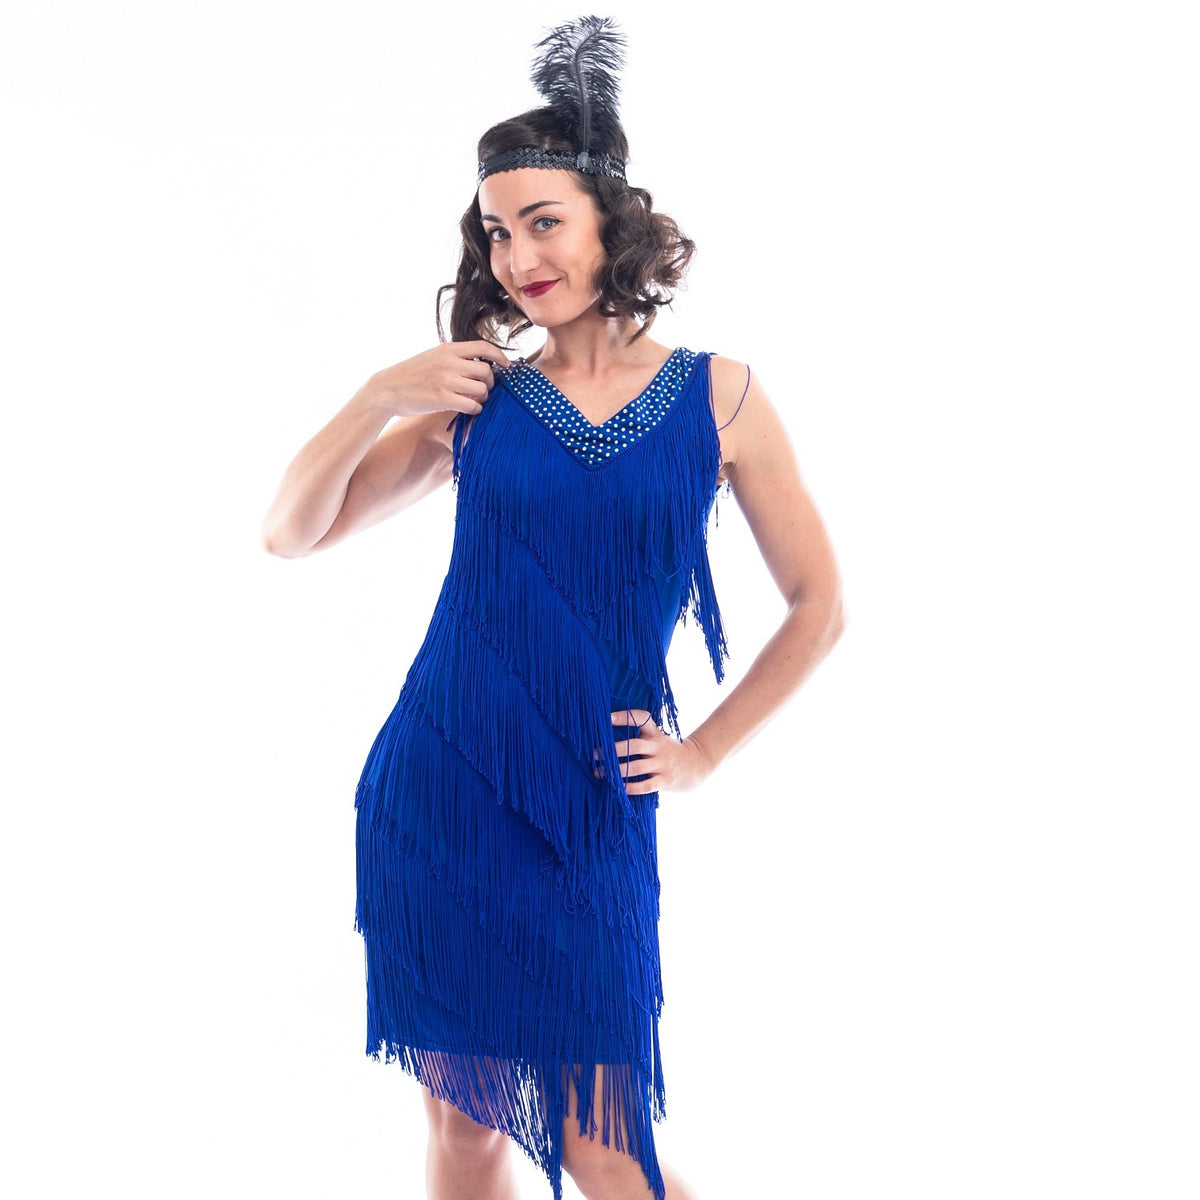 blue dress with fringe